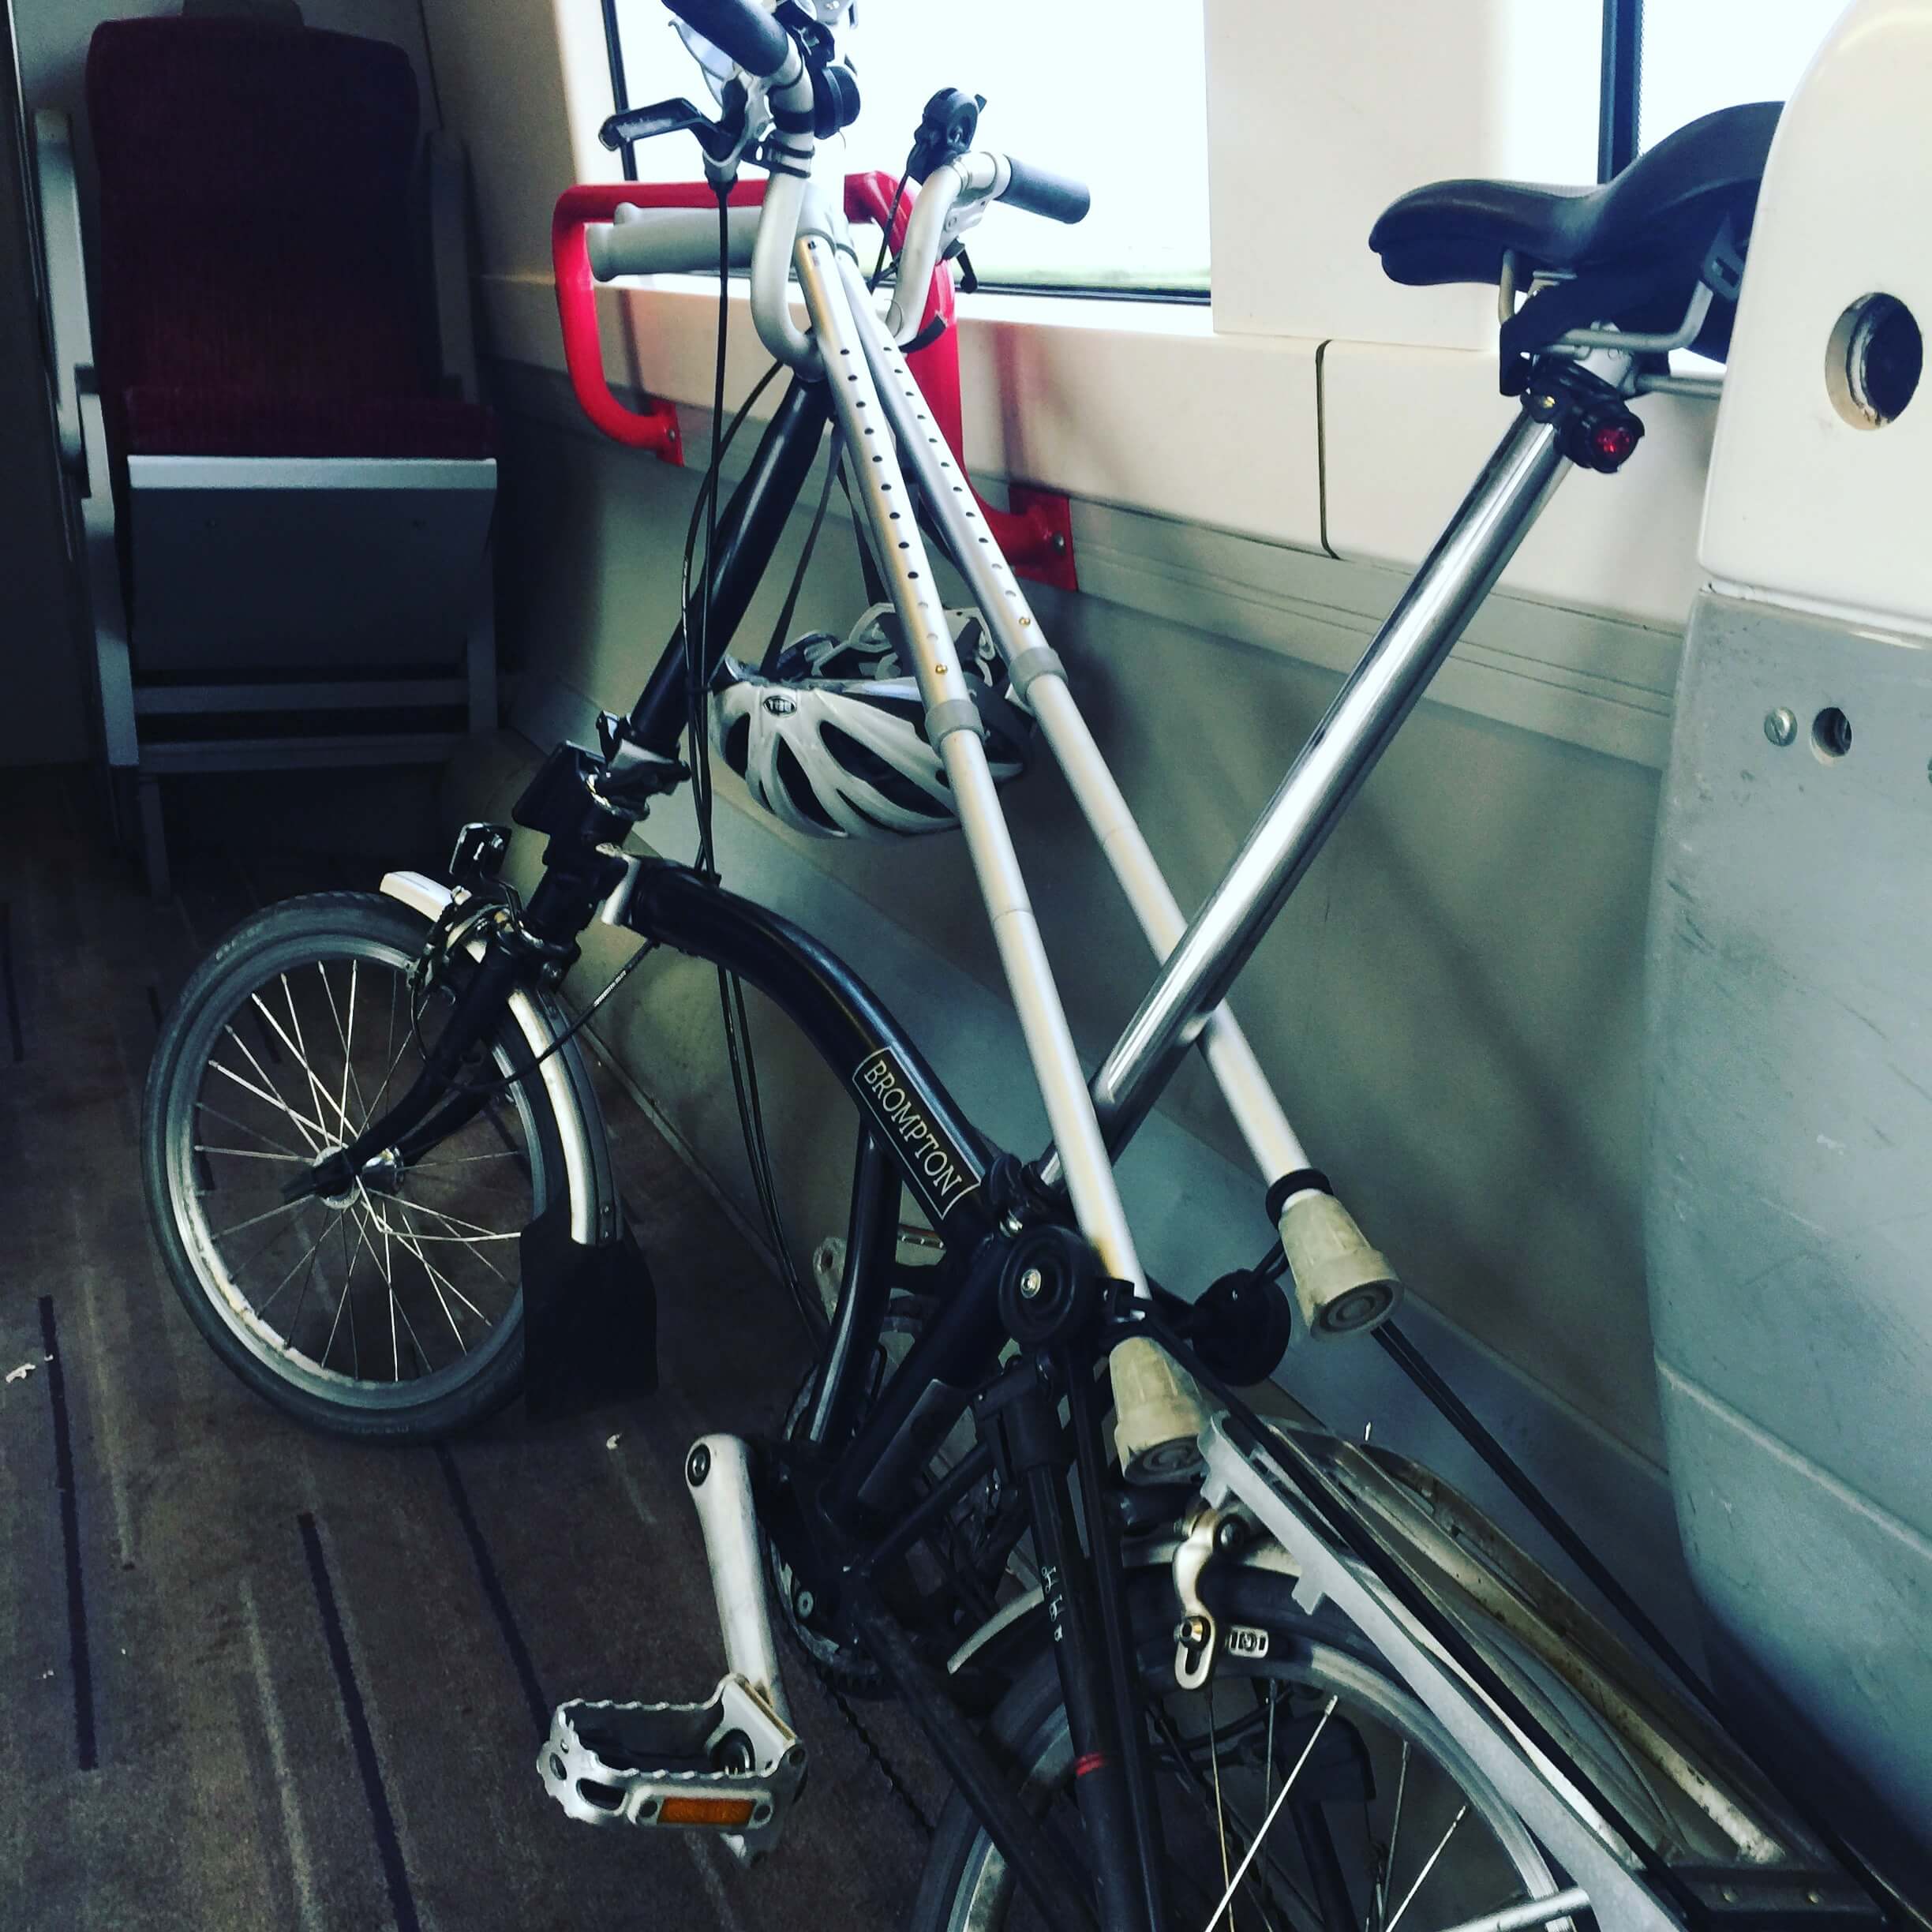 A Brompton bike and crutches on a train